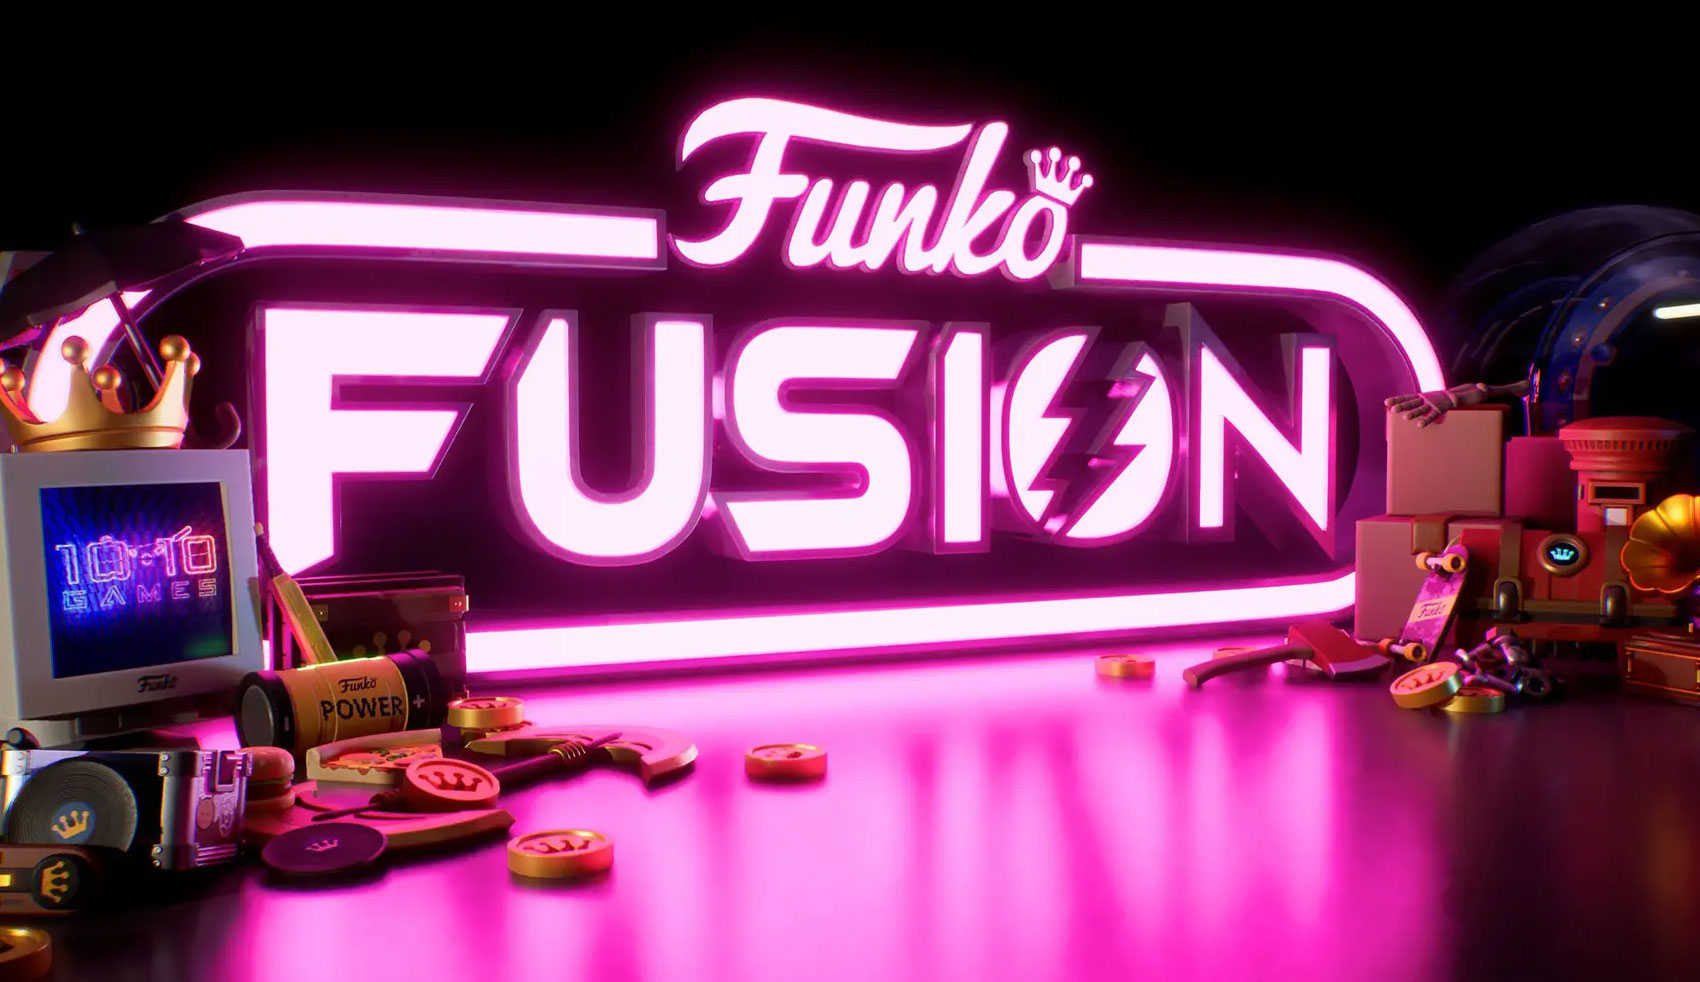 thumb-funko-fusion